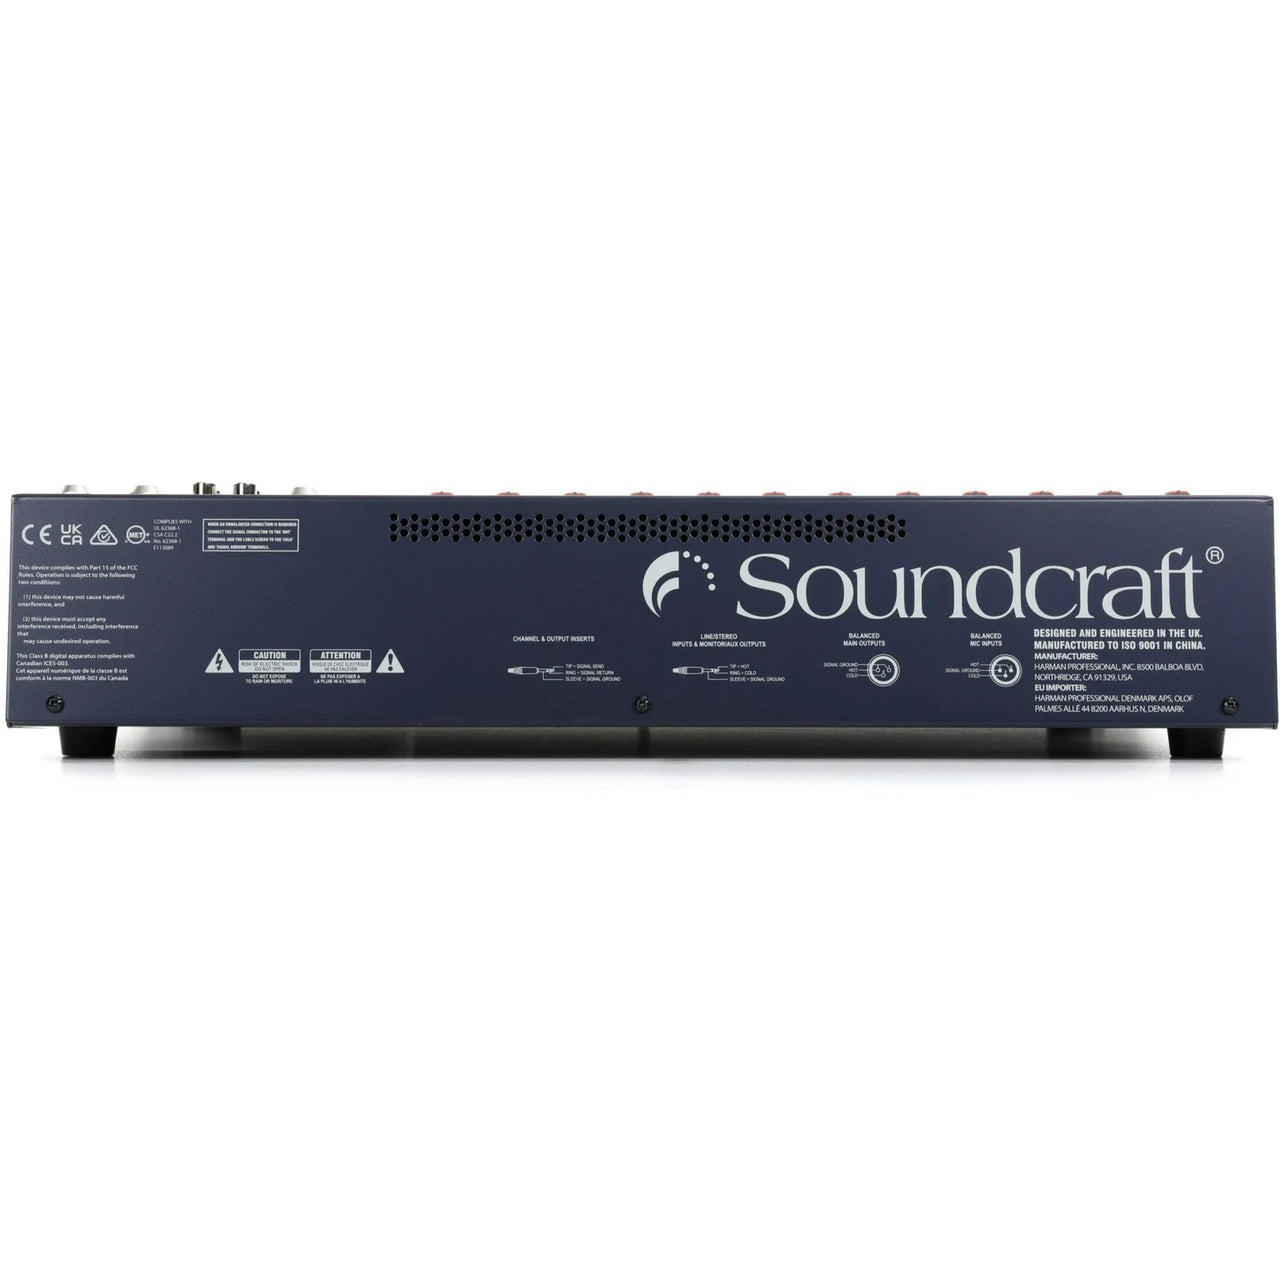 Mezcladora Soundcraft Efx12 Rw 5759us Con Efectos 12 Canales